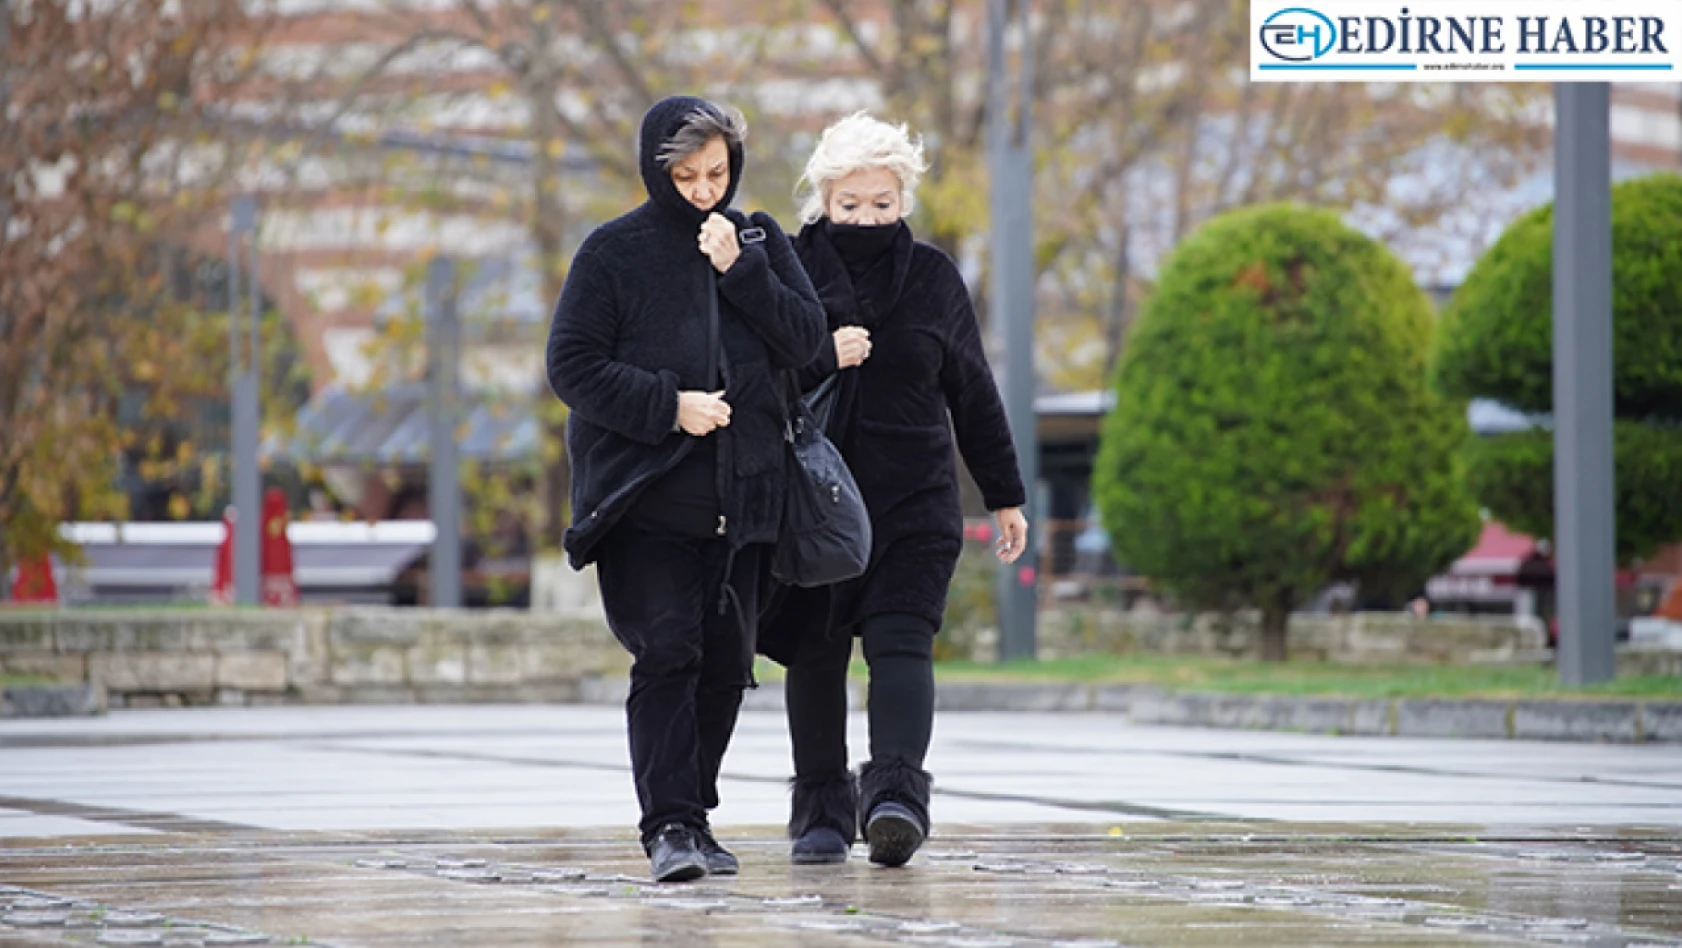 Edirne'de soğuk ve yağışlı hava etkisini gösteriyor